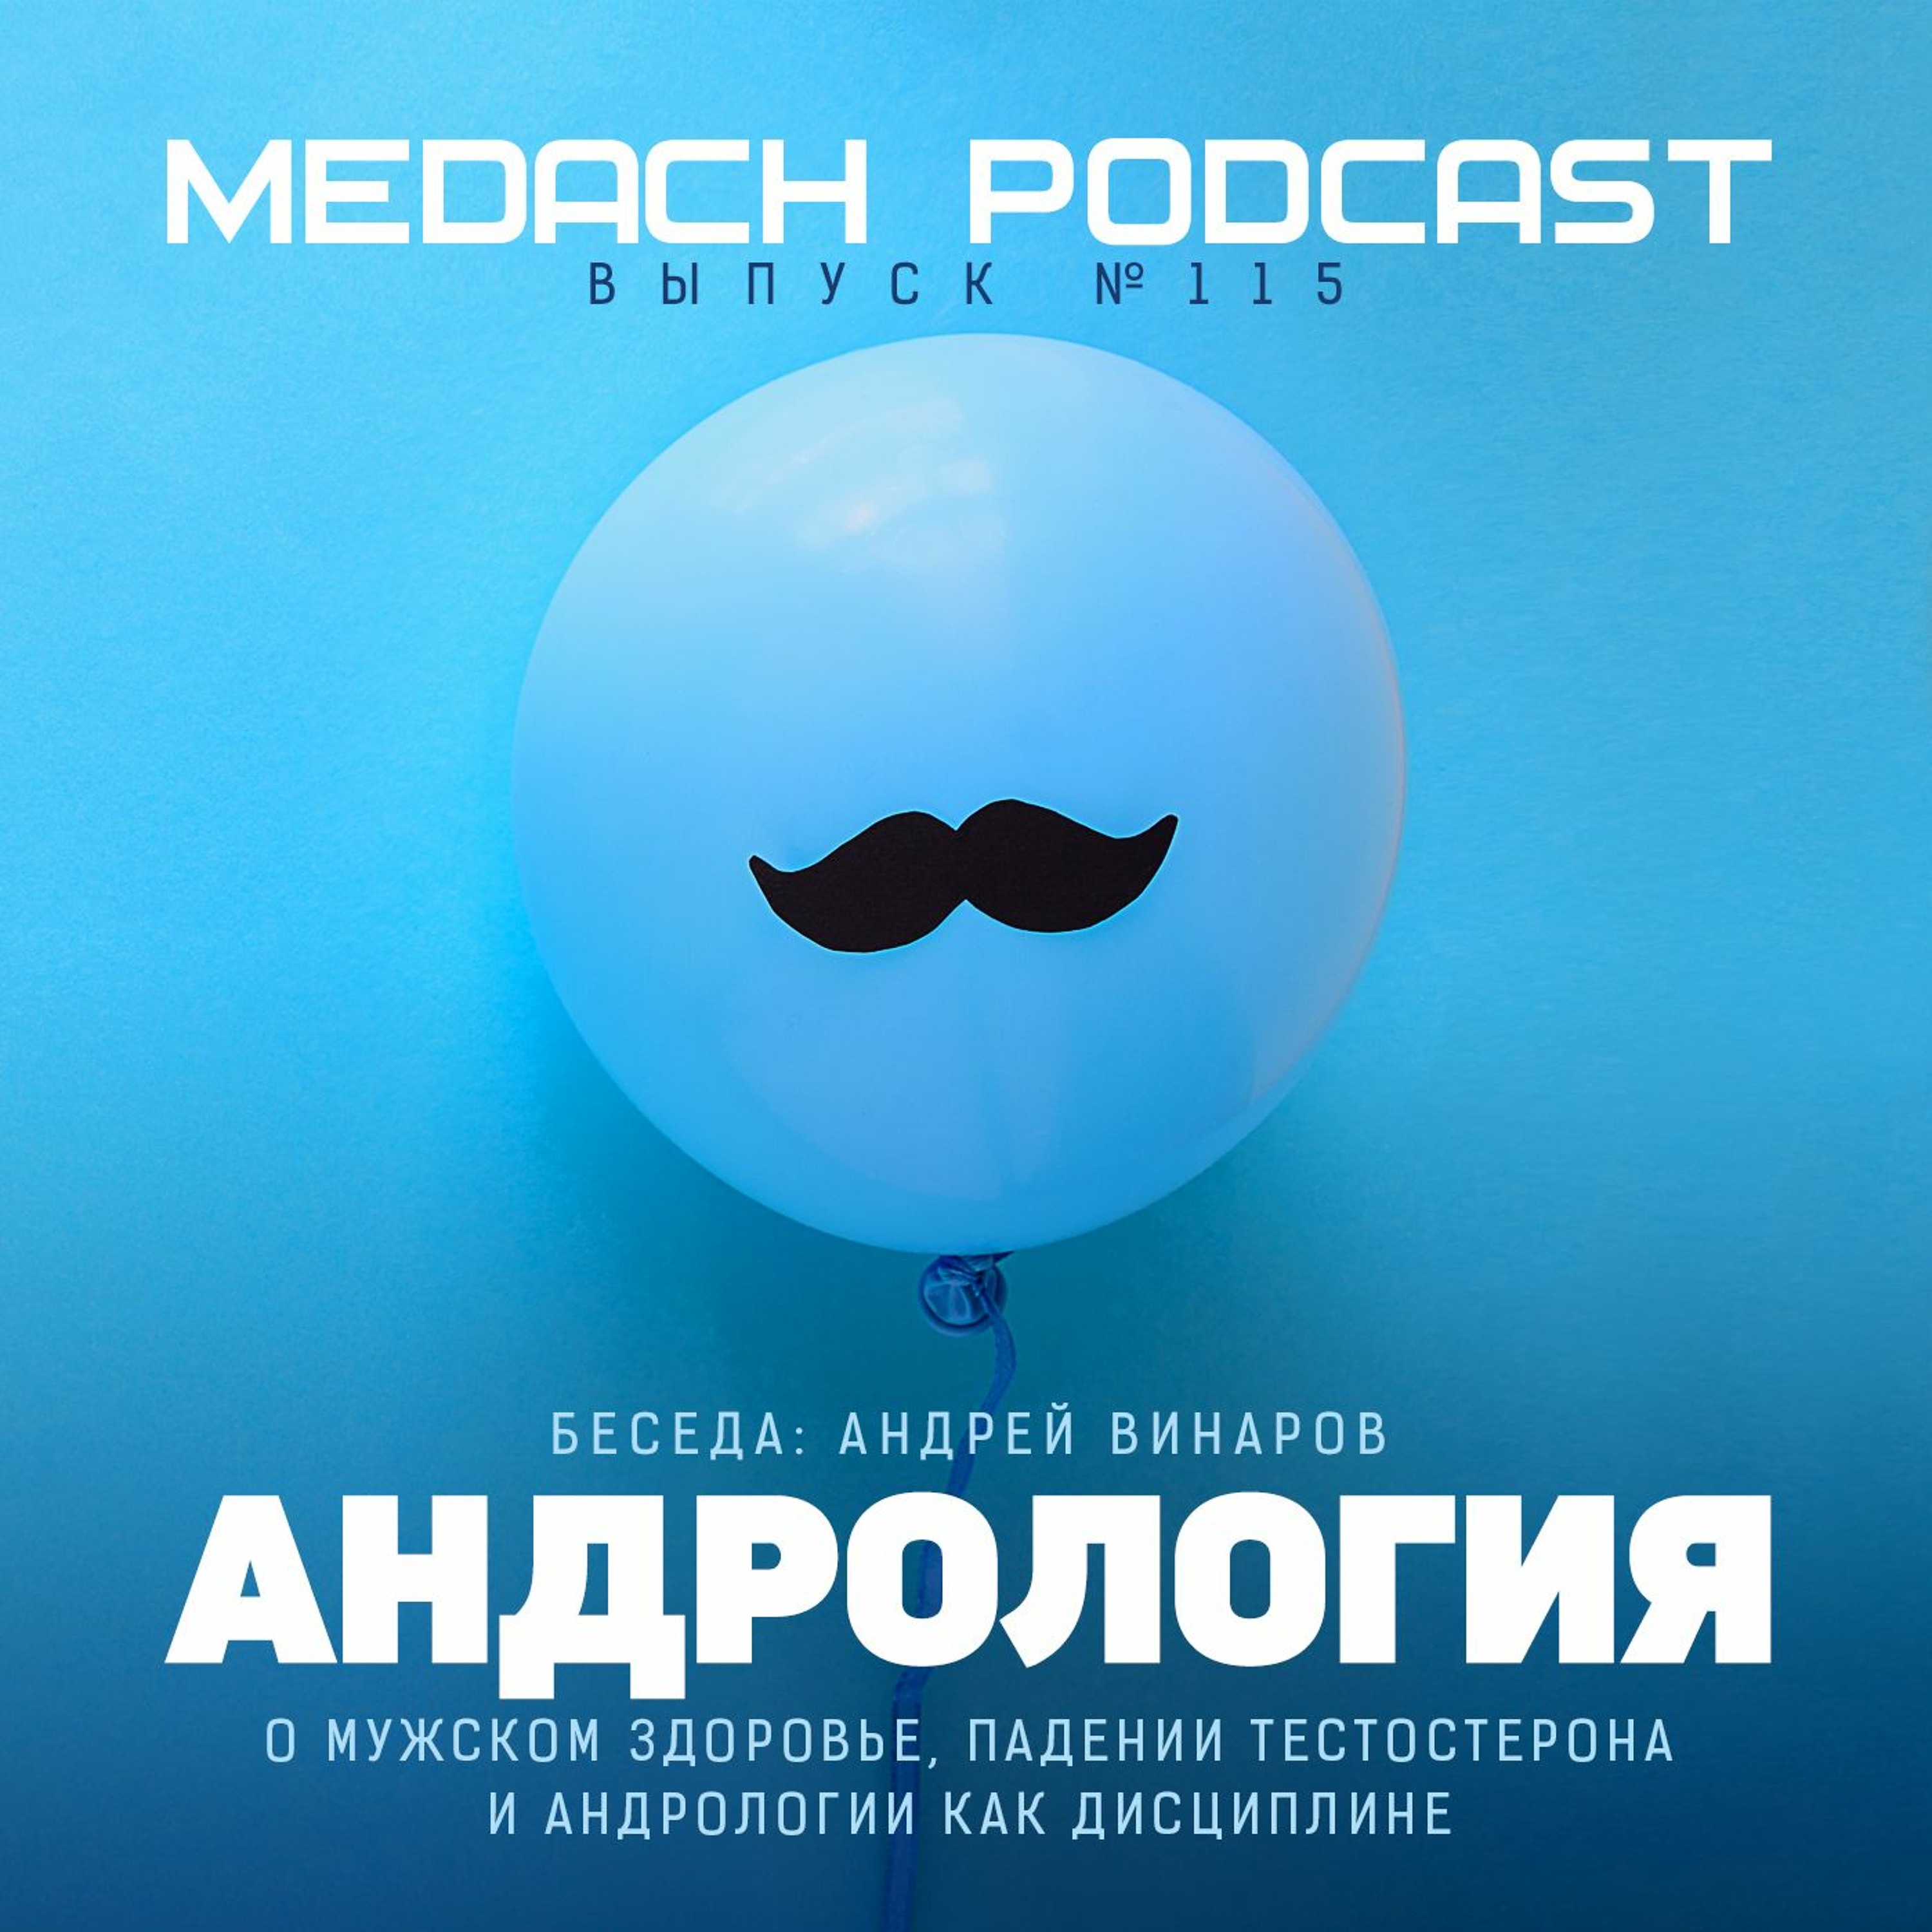 Андрей Винаров  | Андрология, мужское здоровье